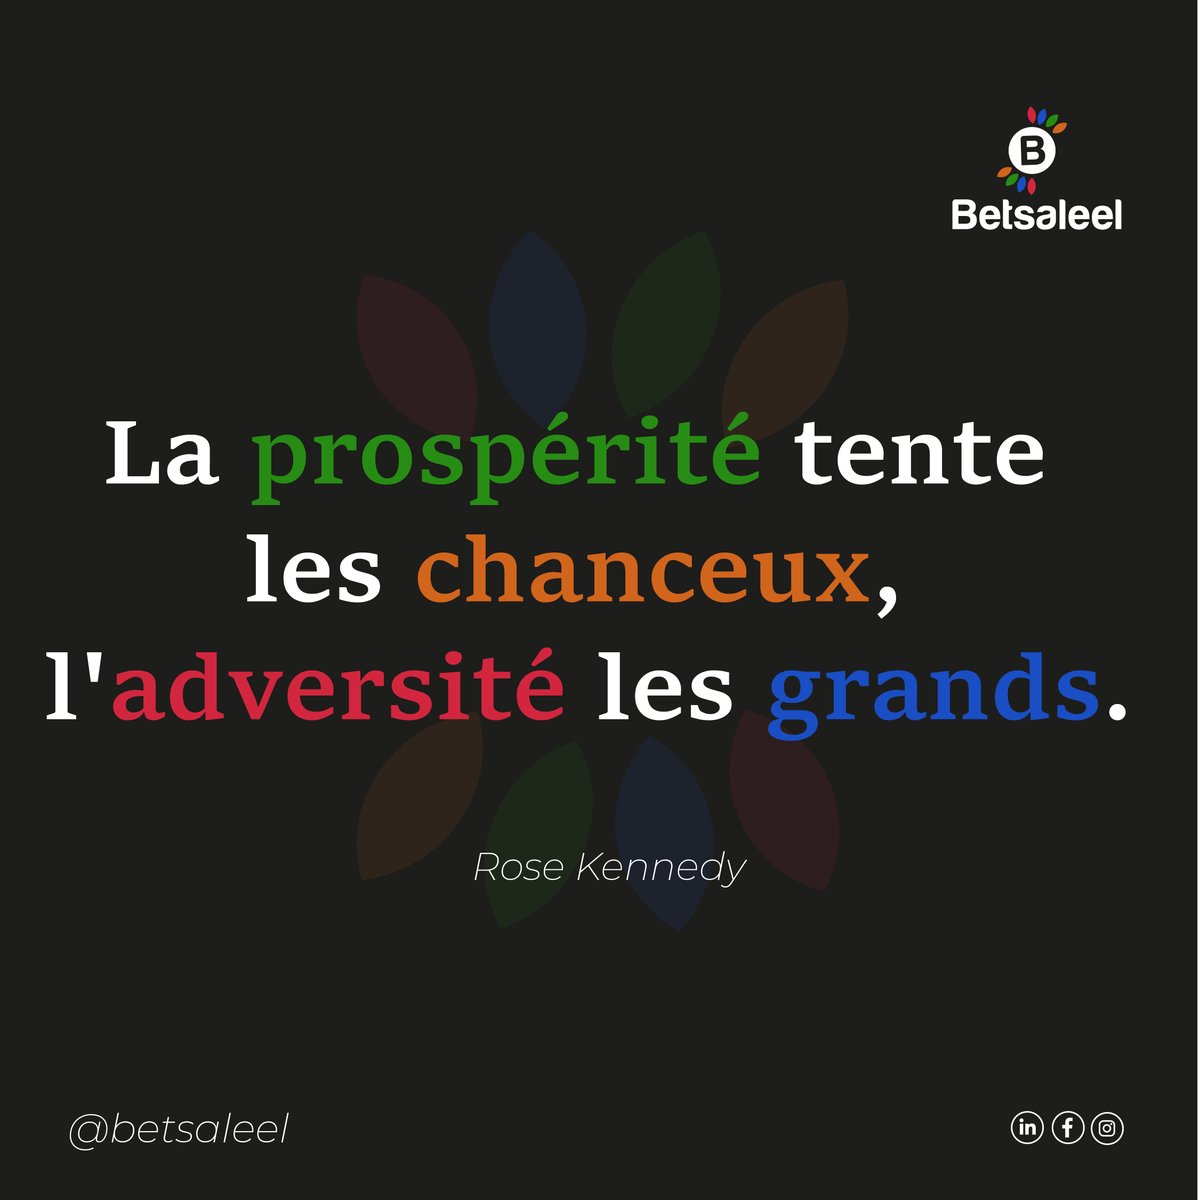 La prospérité tente les chanceux, l'adversité les grands.

Rose Kennedy 

#Betsaleelcompany #CitationFR #Designerthinking #prospérité #chanceux #adversité #grands